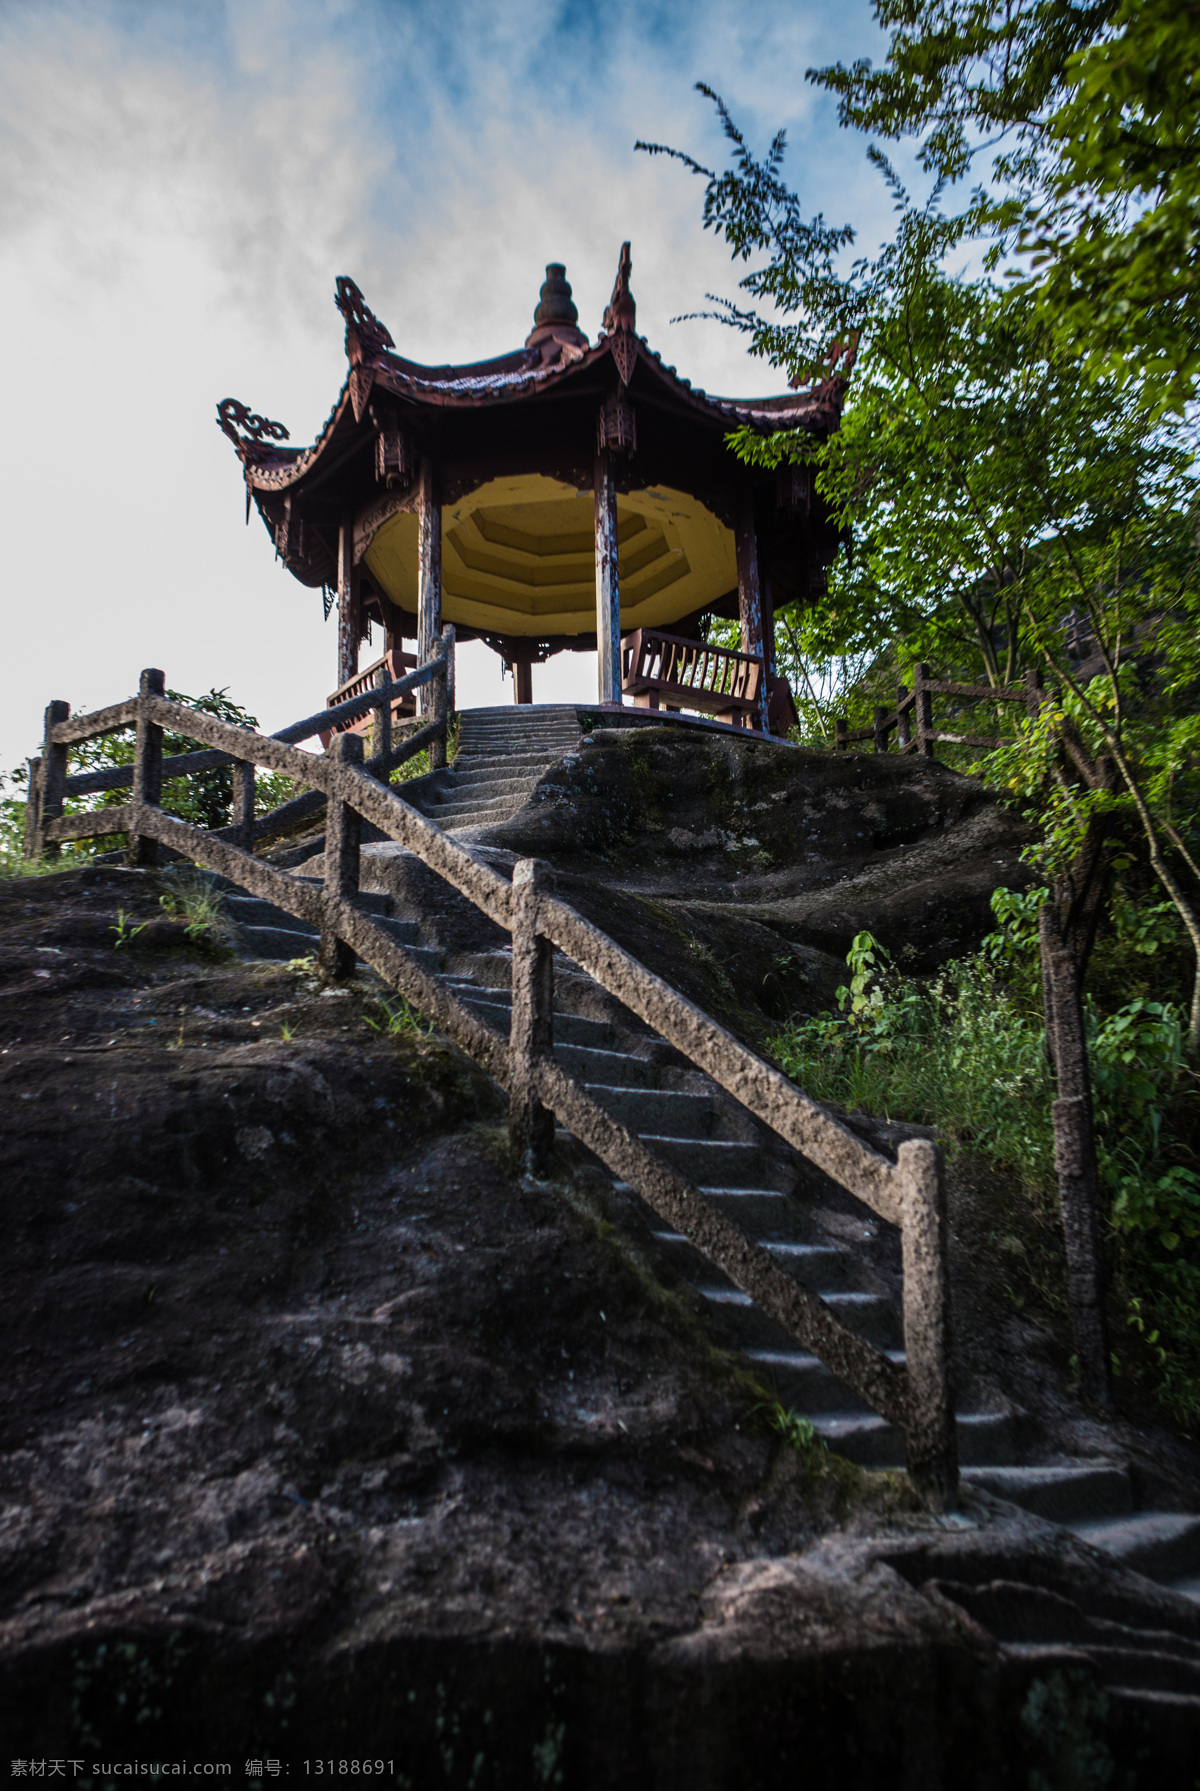 武夷山风景 武夷山 福建 树 蓝天 亭子 石阶 旅游摄影 国内旅游